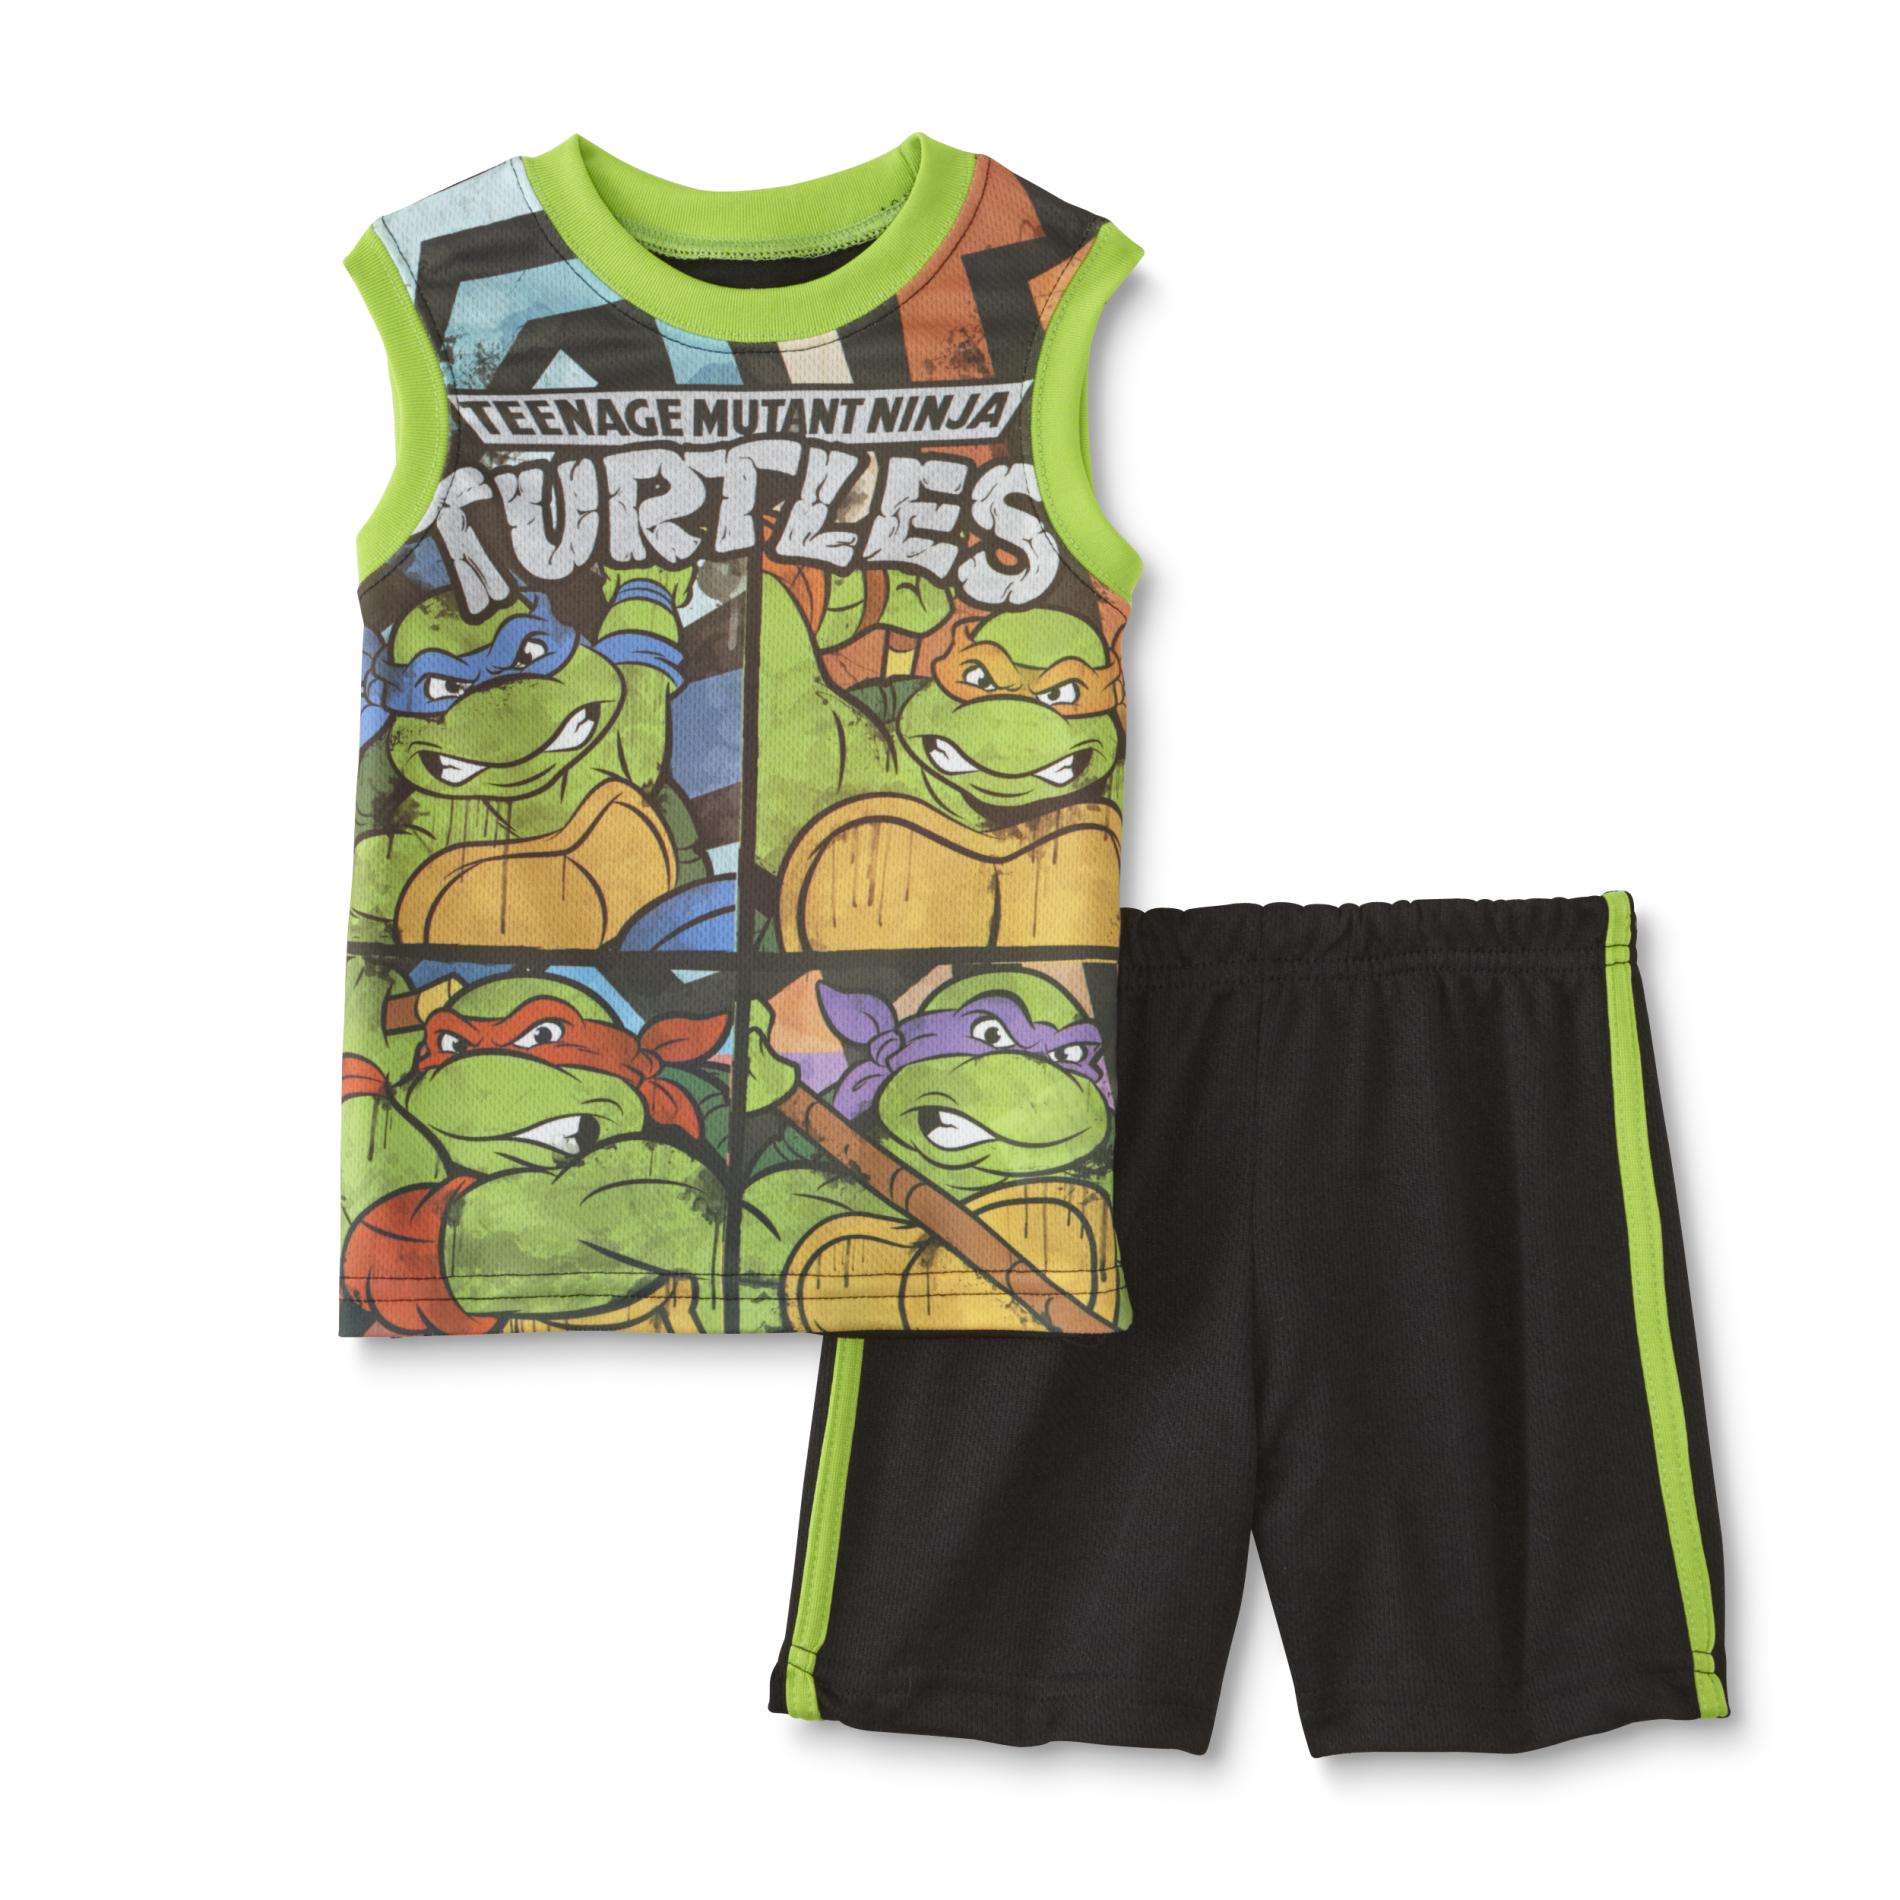 Teenage Mutant Ninja Turtles Toddler Boy's Tank Top & Shorts